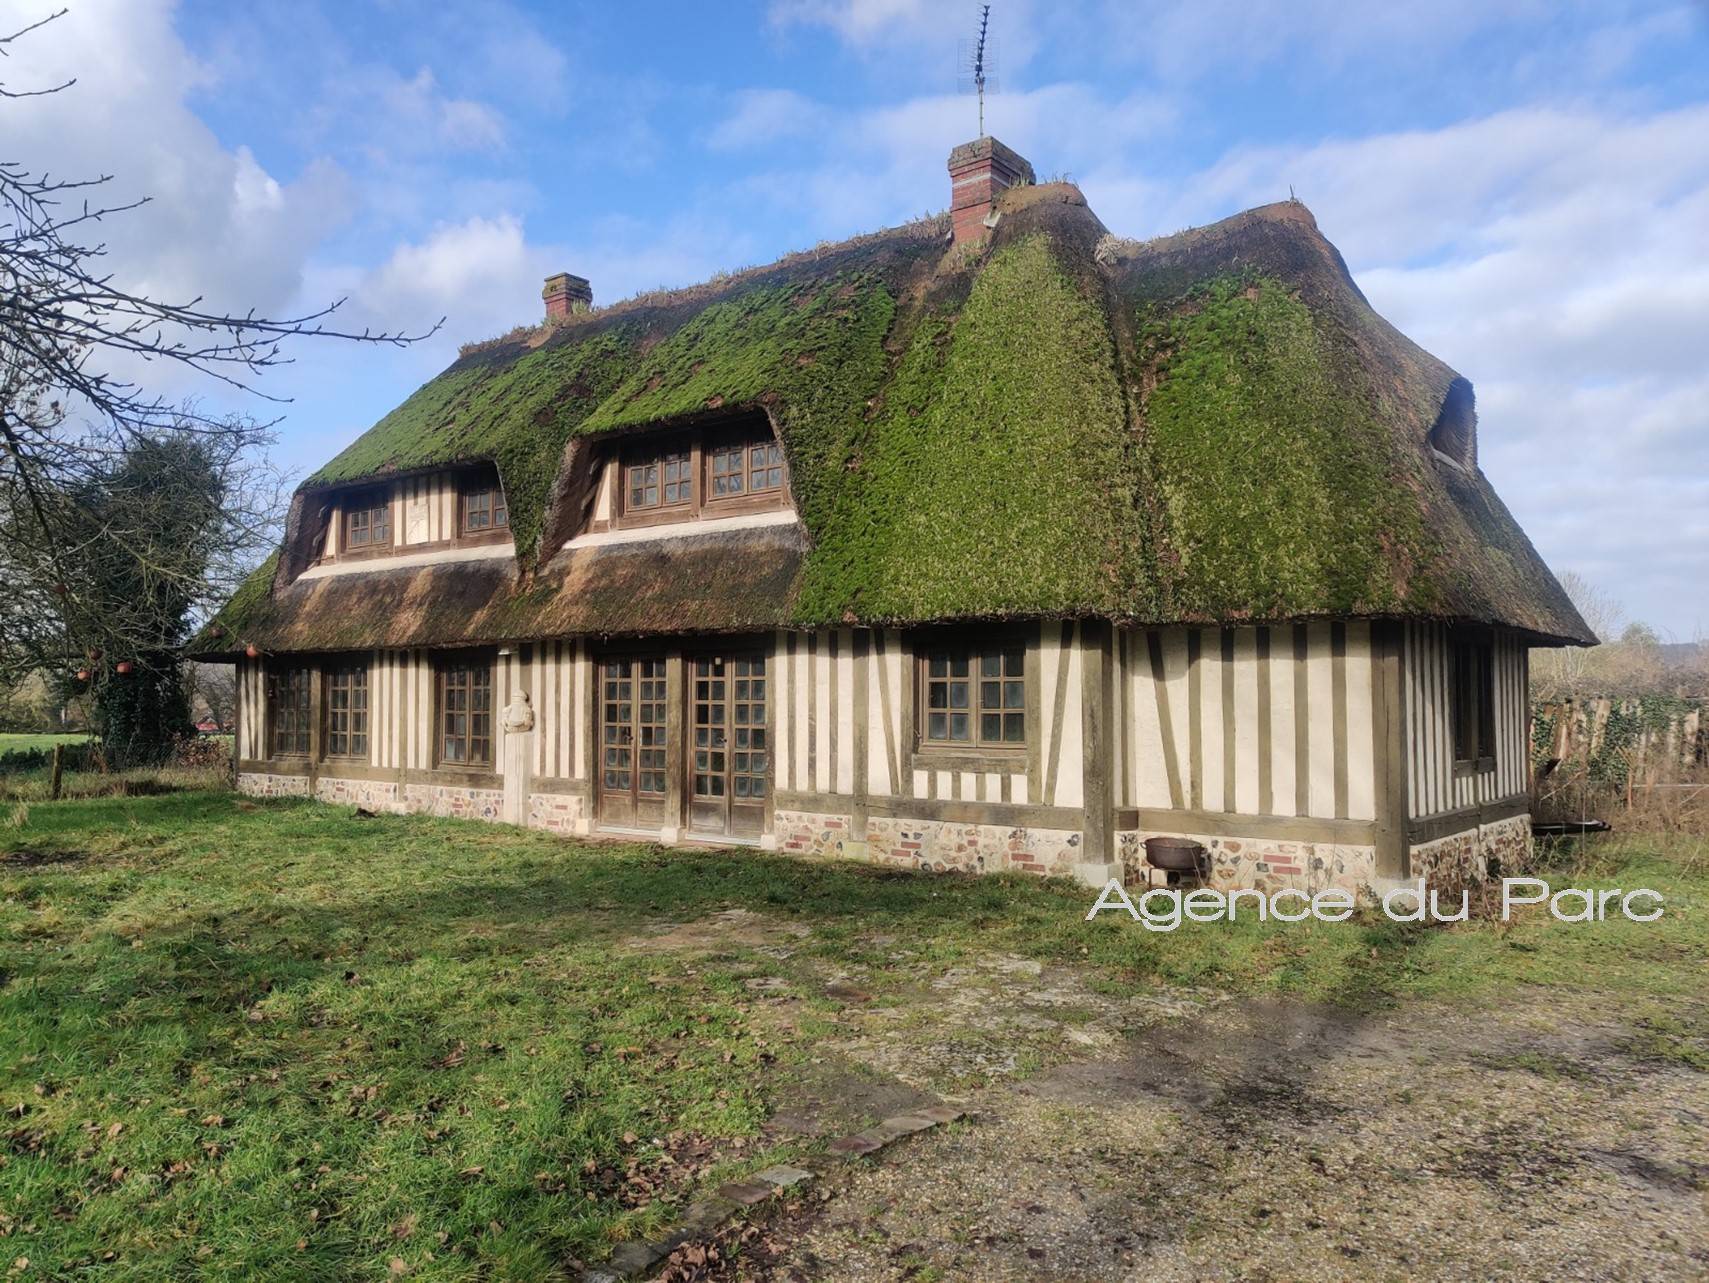 Vente d'une chaumière, dans un bel environnement, sur 6000 m² de terrain, presqu'ile de Brotonne, vallée de Seine, en Normandie